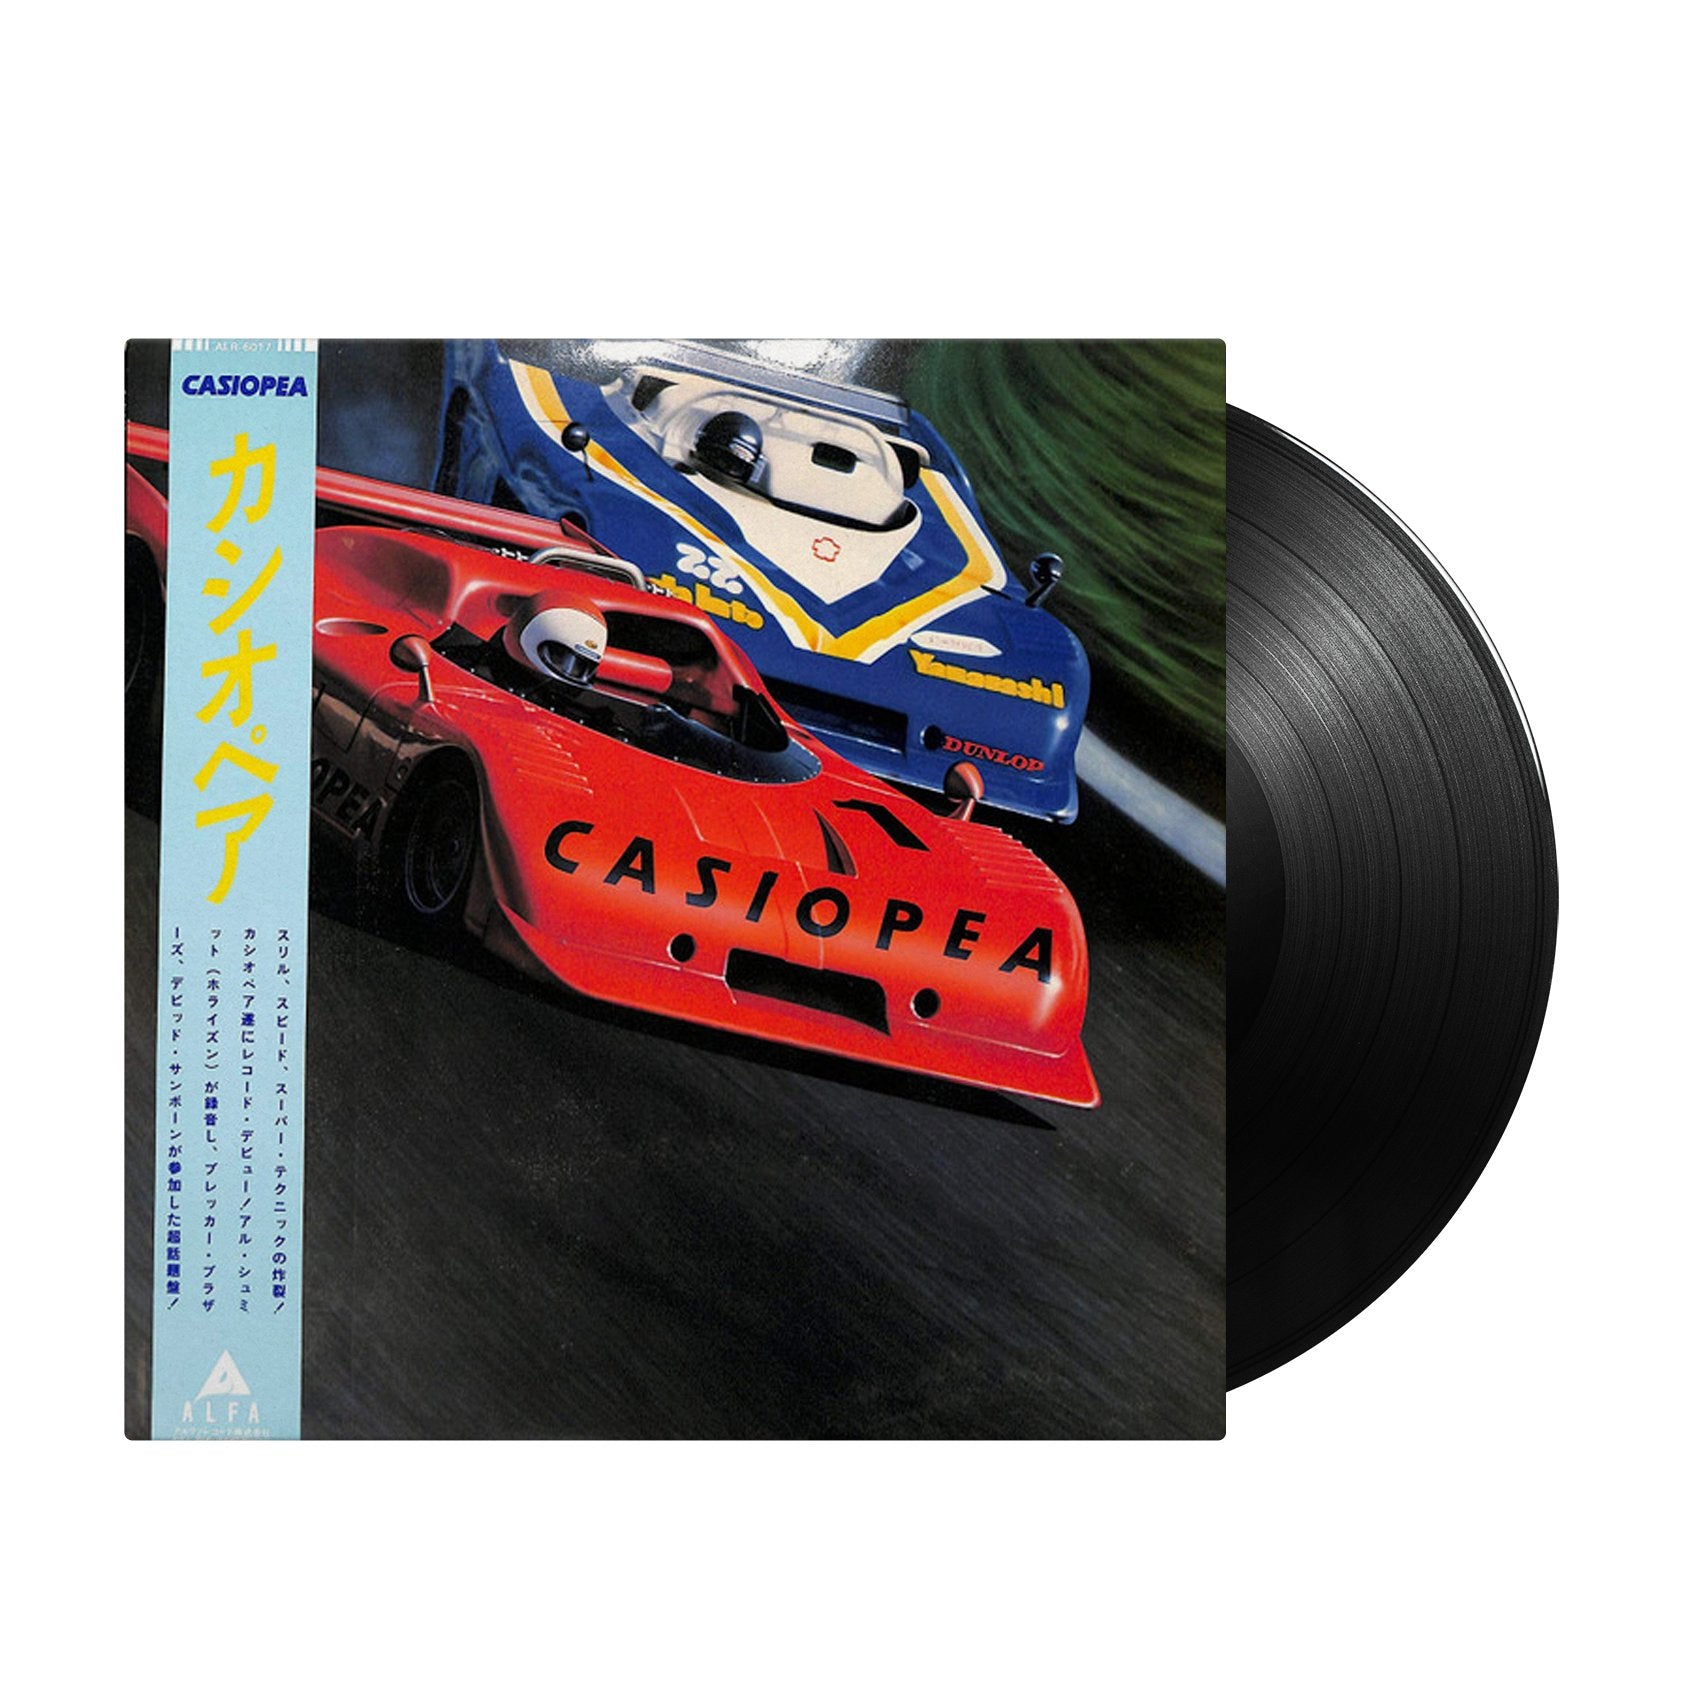 Casiopea - Casiopea (Japan Import) - Inner Ocean Records